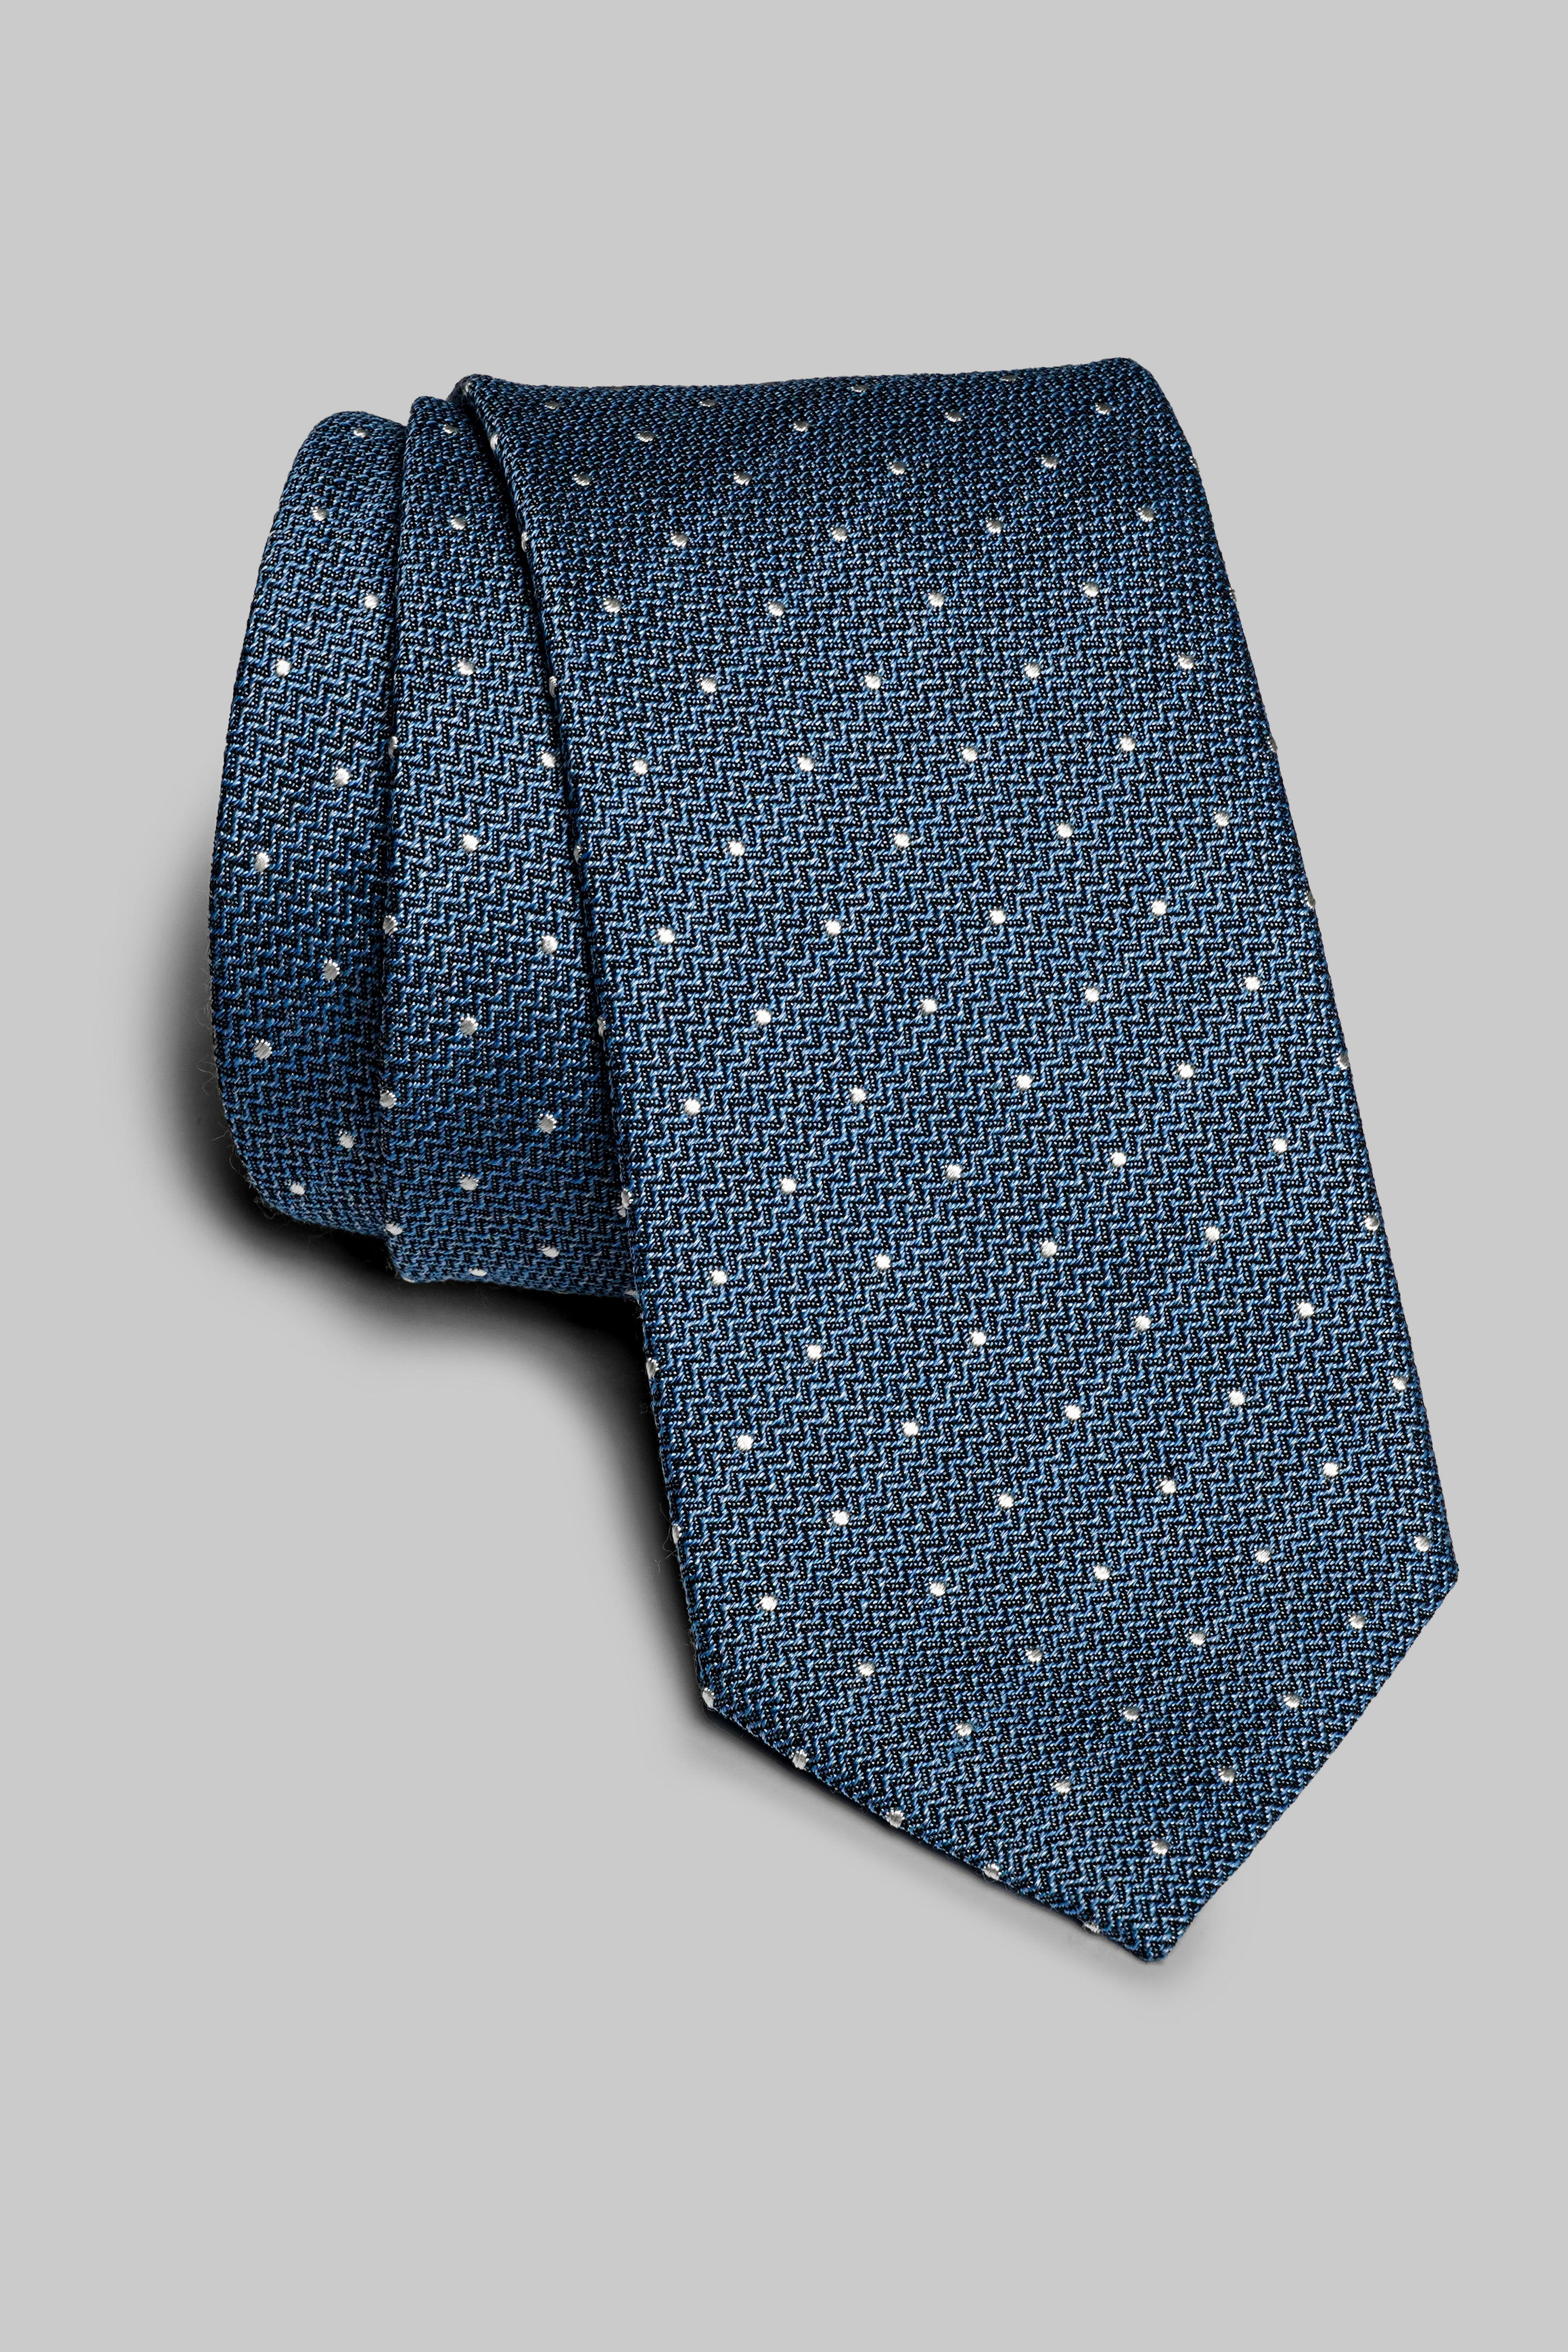 Vue alternative Pindot cravate tissée en bleu ciel